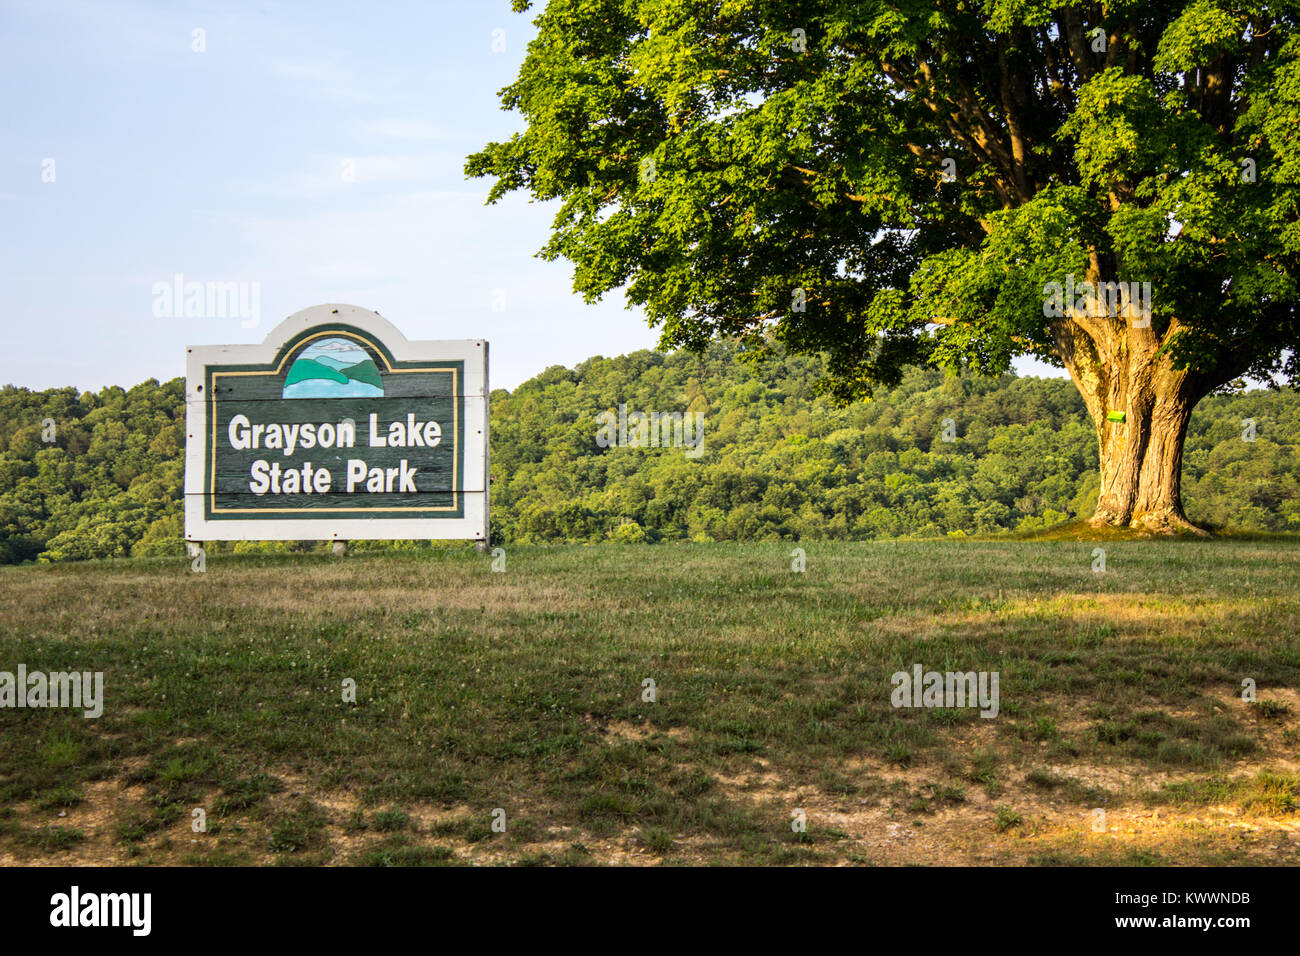 Grayson, Kentucky, USA - 12 juin 2015 : Welcome sign pour Grayson Lake State Park dans le Kentucky. Grayson Lake englobe plus de 1500 acres. Banque D'Images